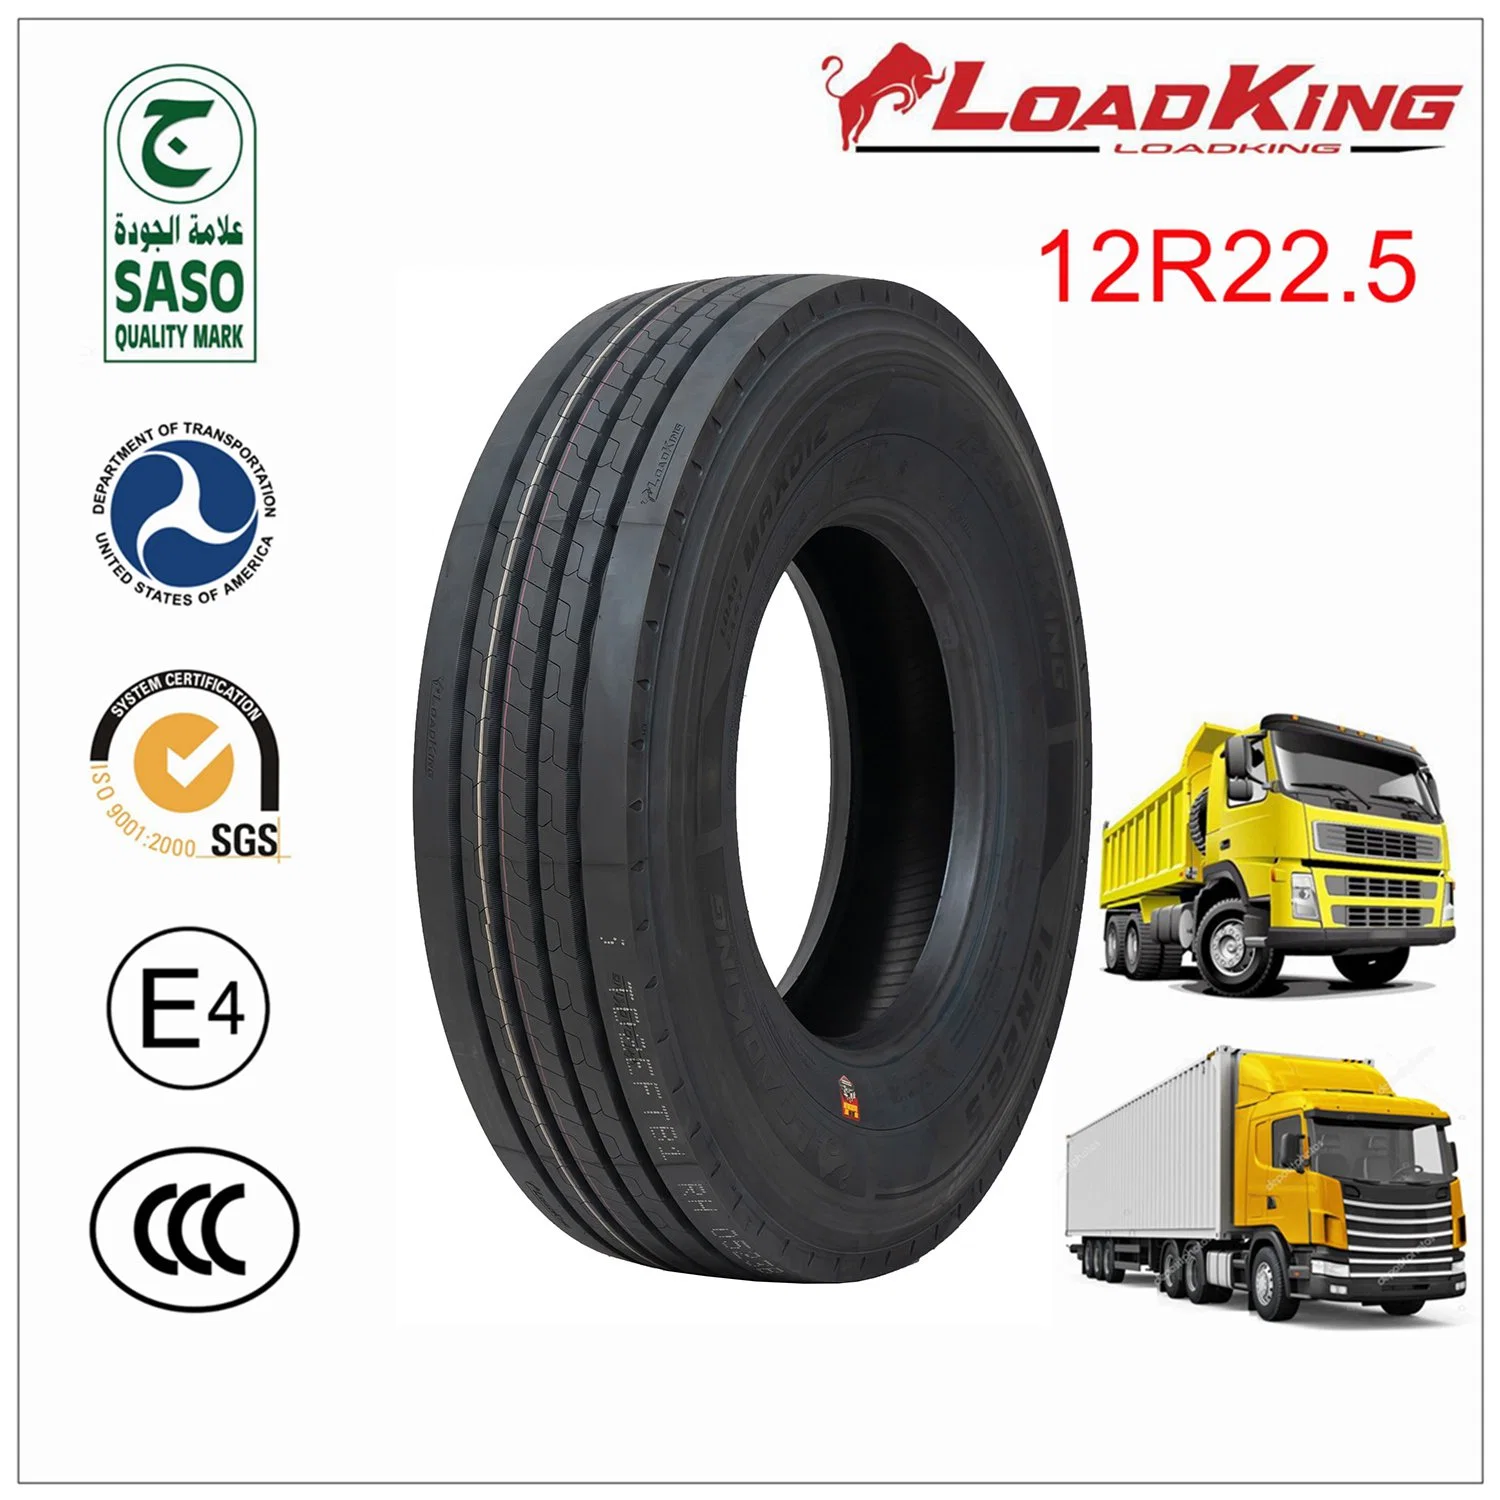 12r22.5 Loadking marque Vente en gros Prix bon marché Chinois tout acier radial Pneus de camion